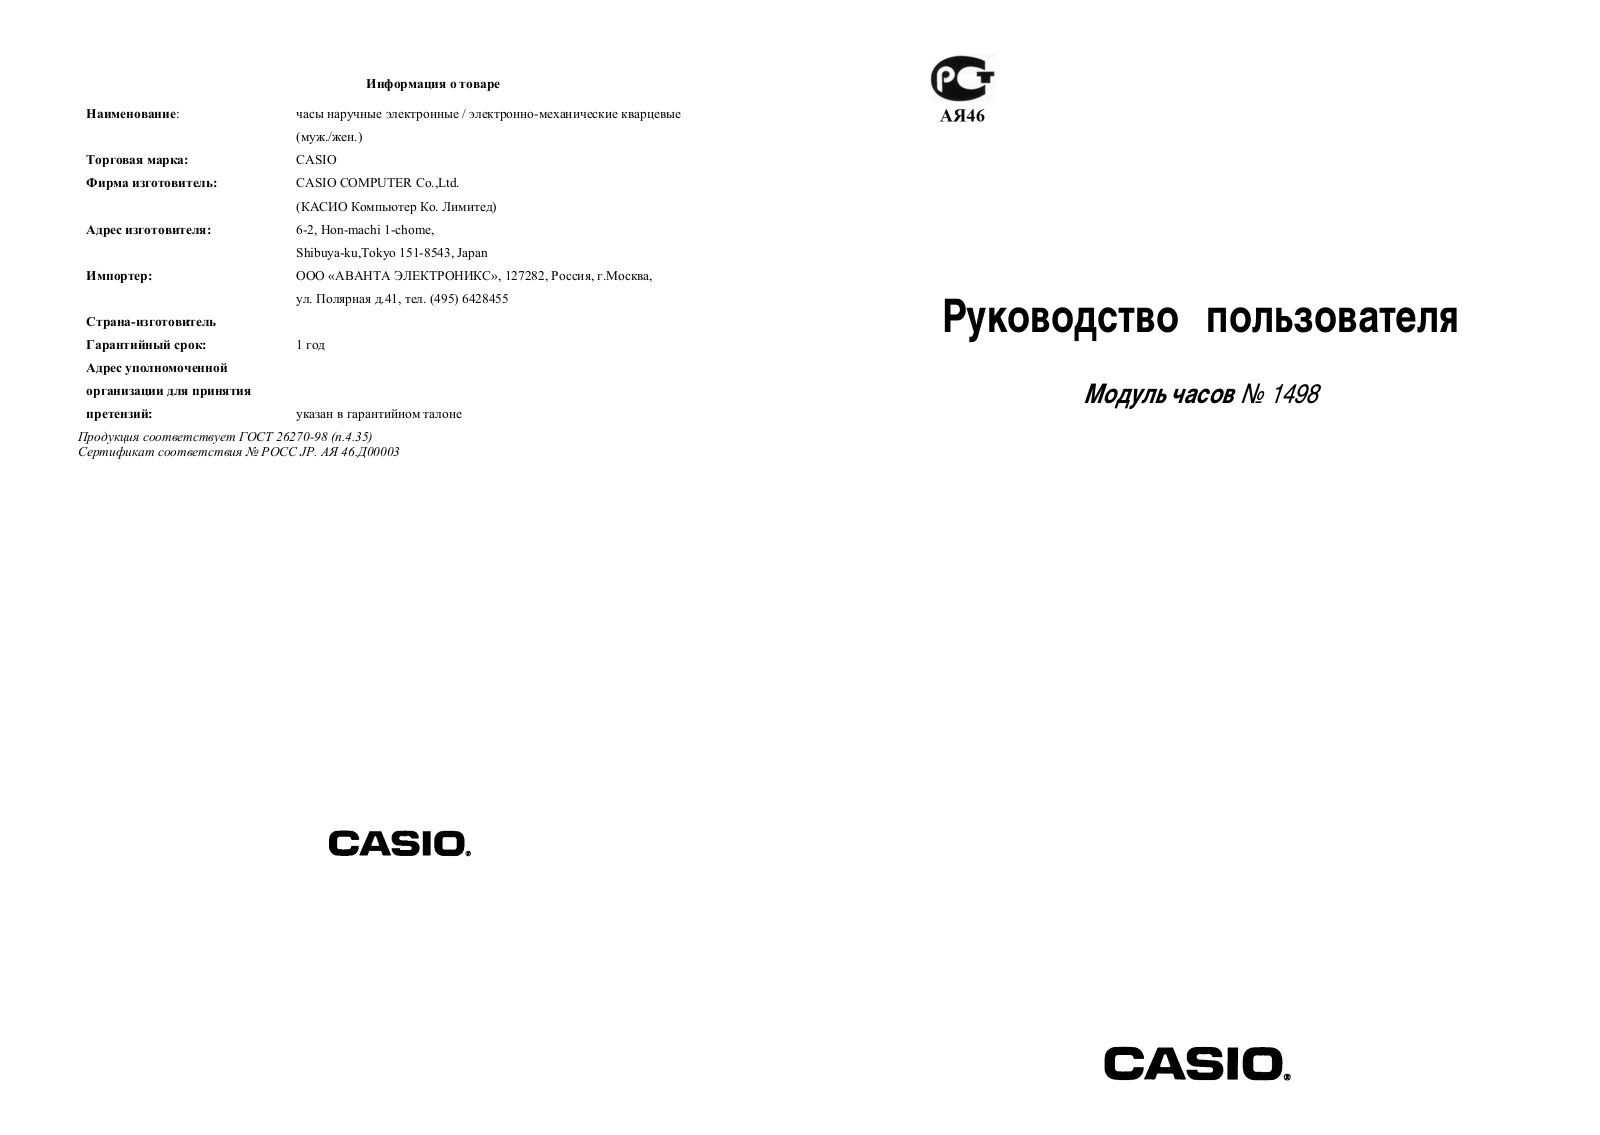 Casio 1498 User Manual